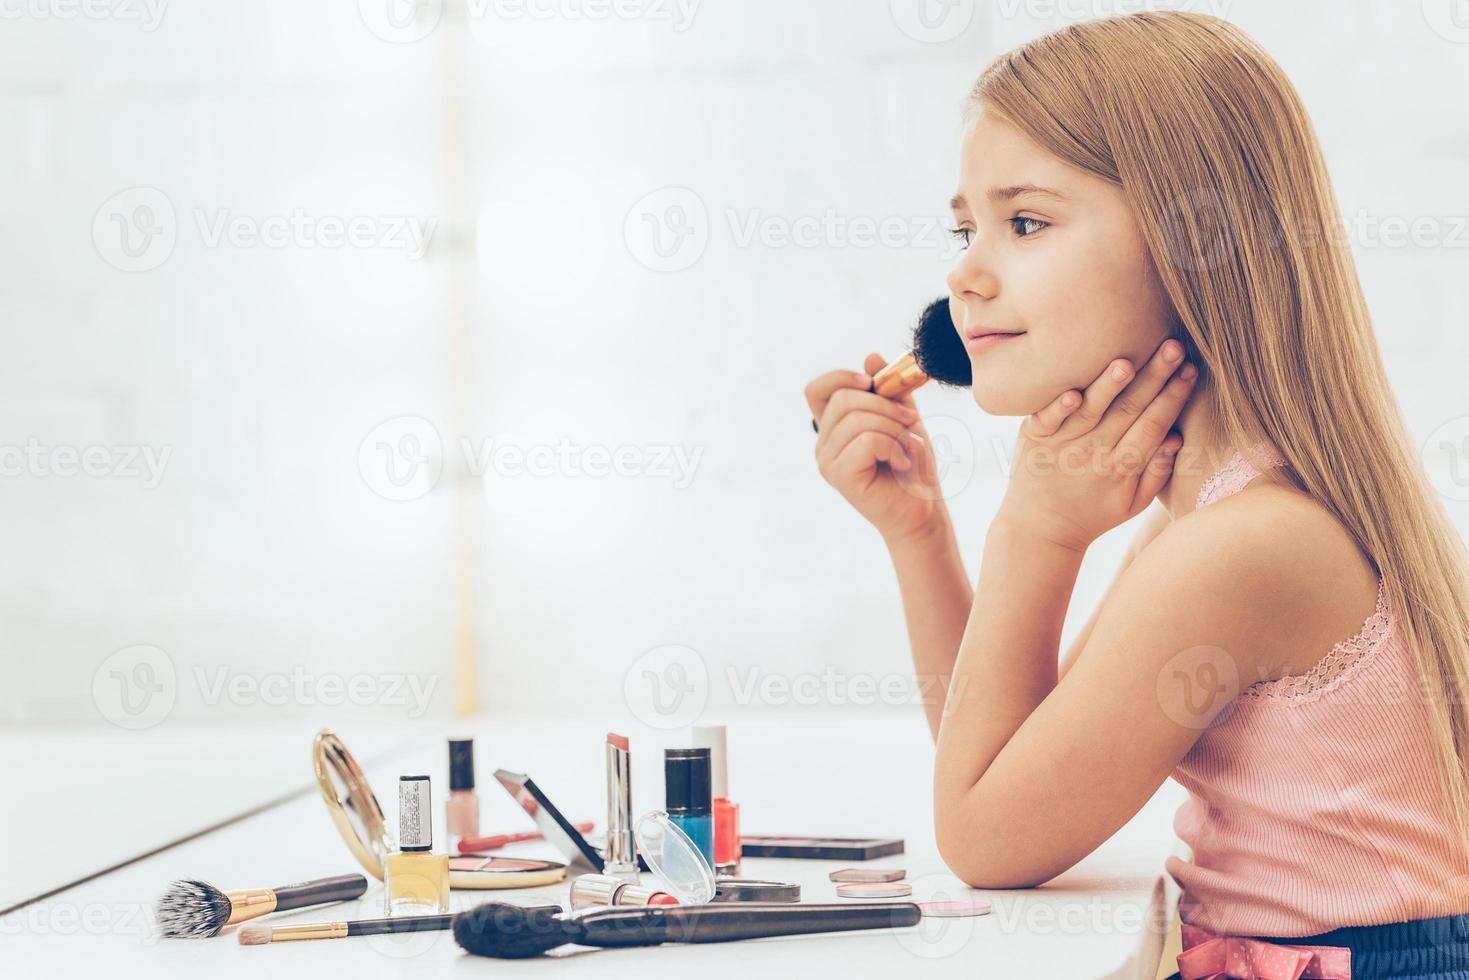 agregando un poco de color a mis mejillas. vista lateral de una niñita alegre que se maquilla y mira su reflejo en el espejo mientras se sienta en el tocador foto